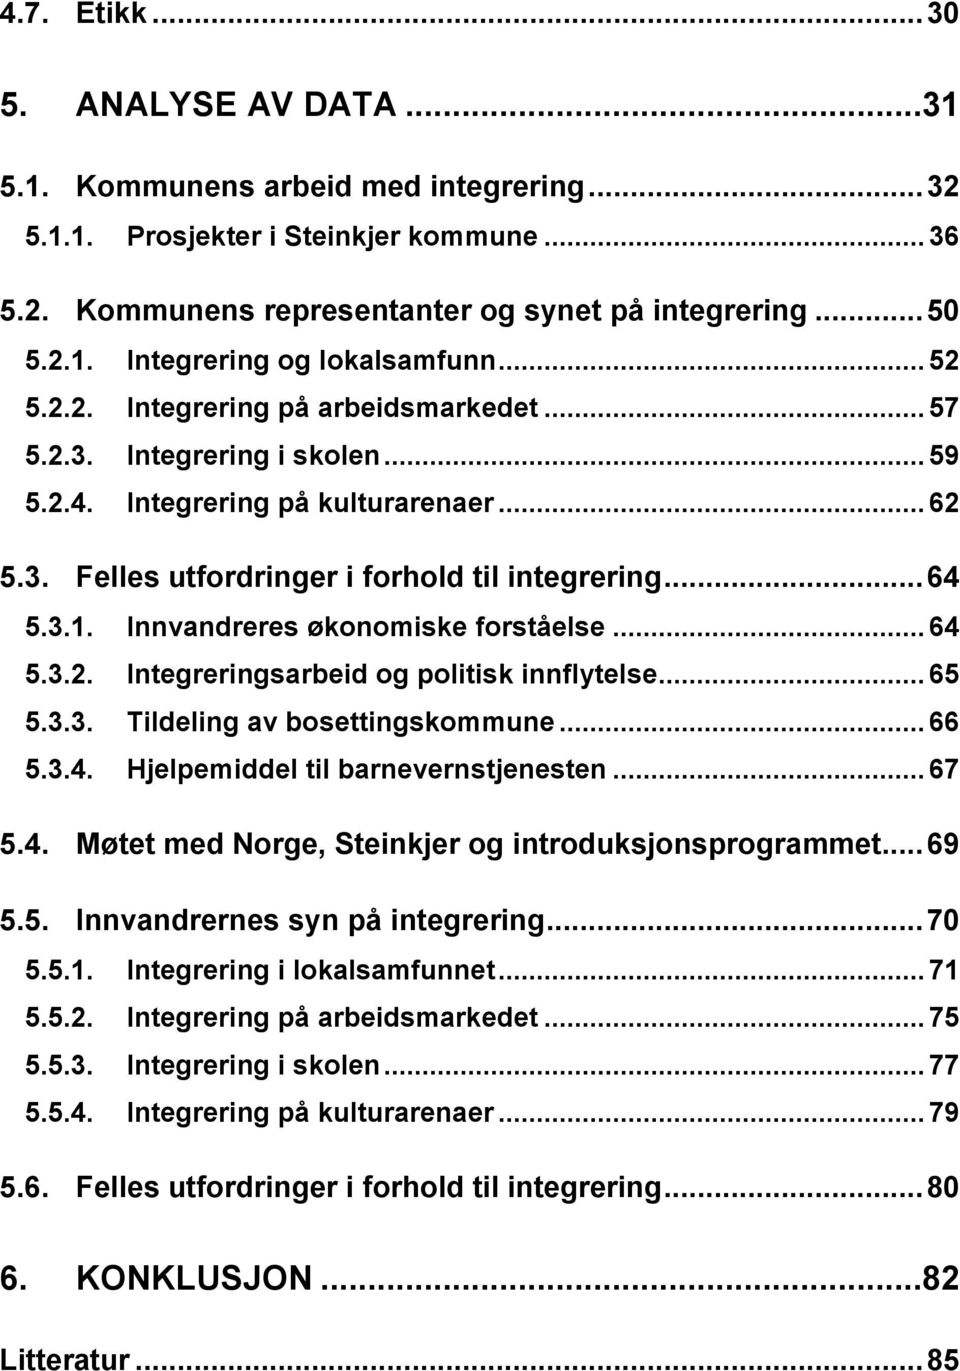 Innvandreres økonomiske forståelse... 64 5.3.2. Integreringsarbeid og politisk innflytelse... 65 5.3.3. Tildeling av bosettingskommune... 66 5.3.4. Hjelpemiddel til barnevernstjenesten... 67 5.4. Møtet med Norge, Steinkjer og introduksjonsprogrammet.